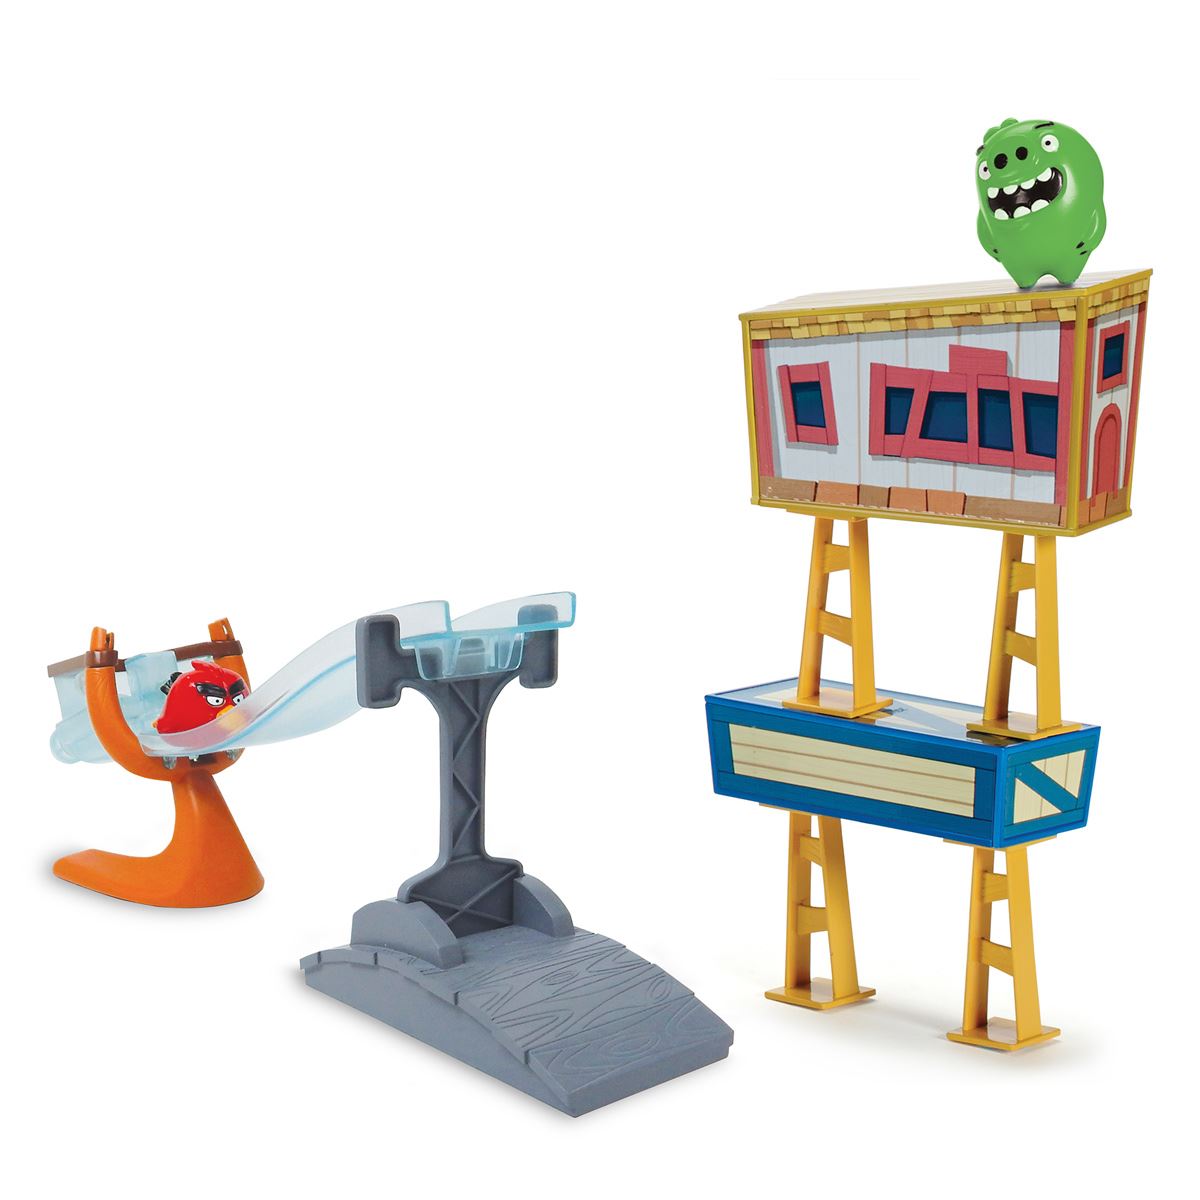 Set Lanzador Angry Birds